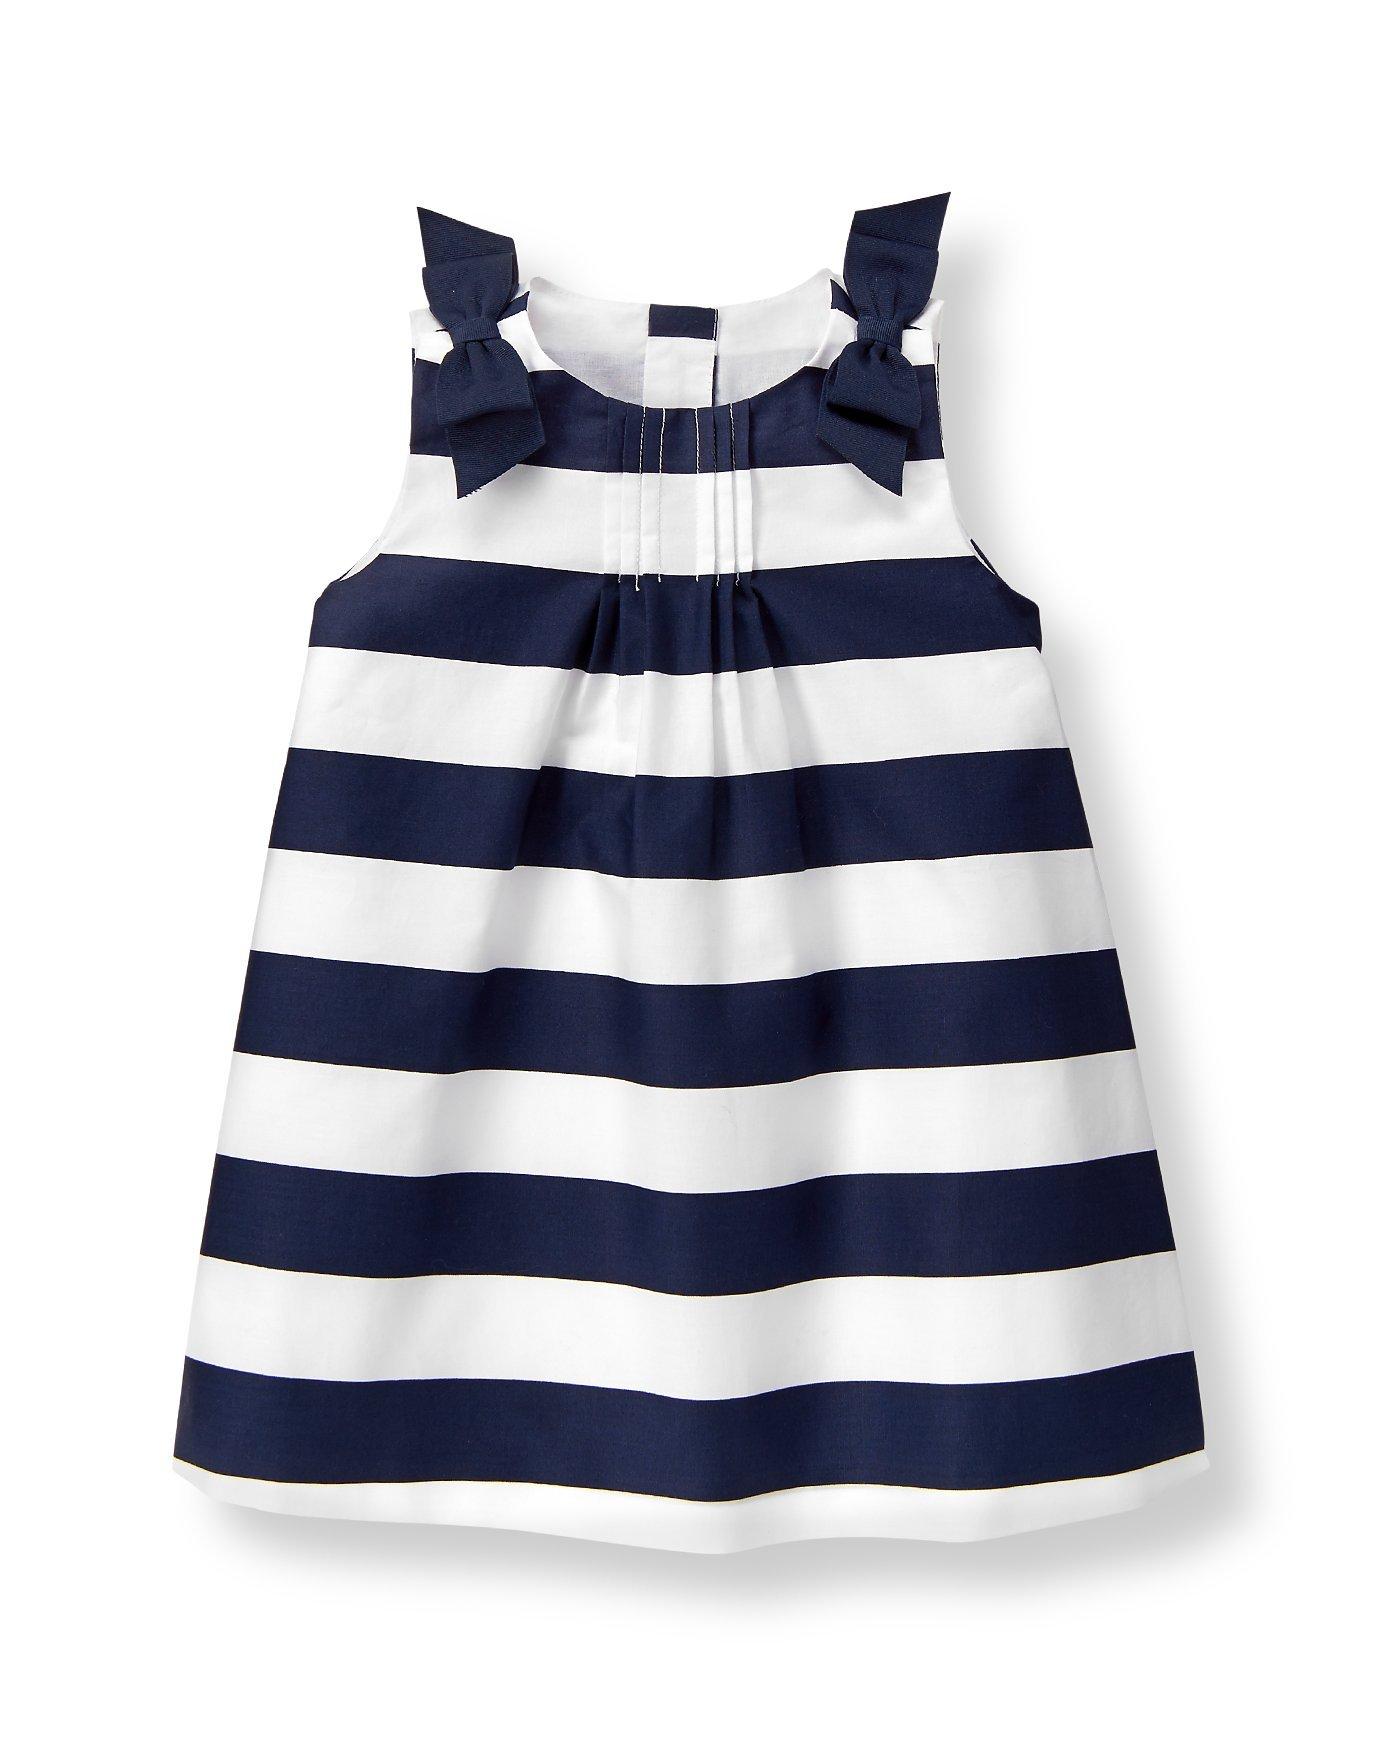 Newborn Navy Stripe Striped Dress by Janie and Jack